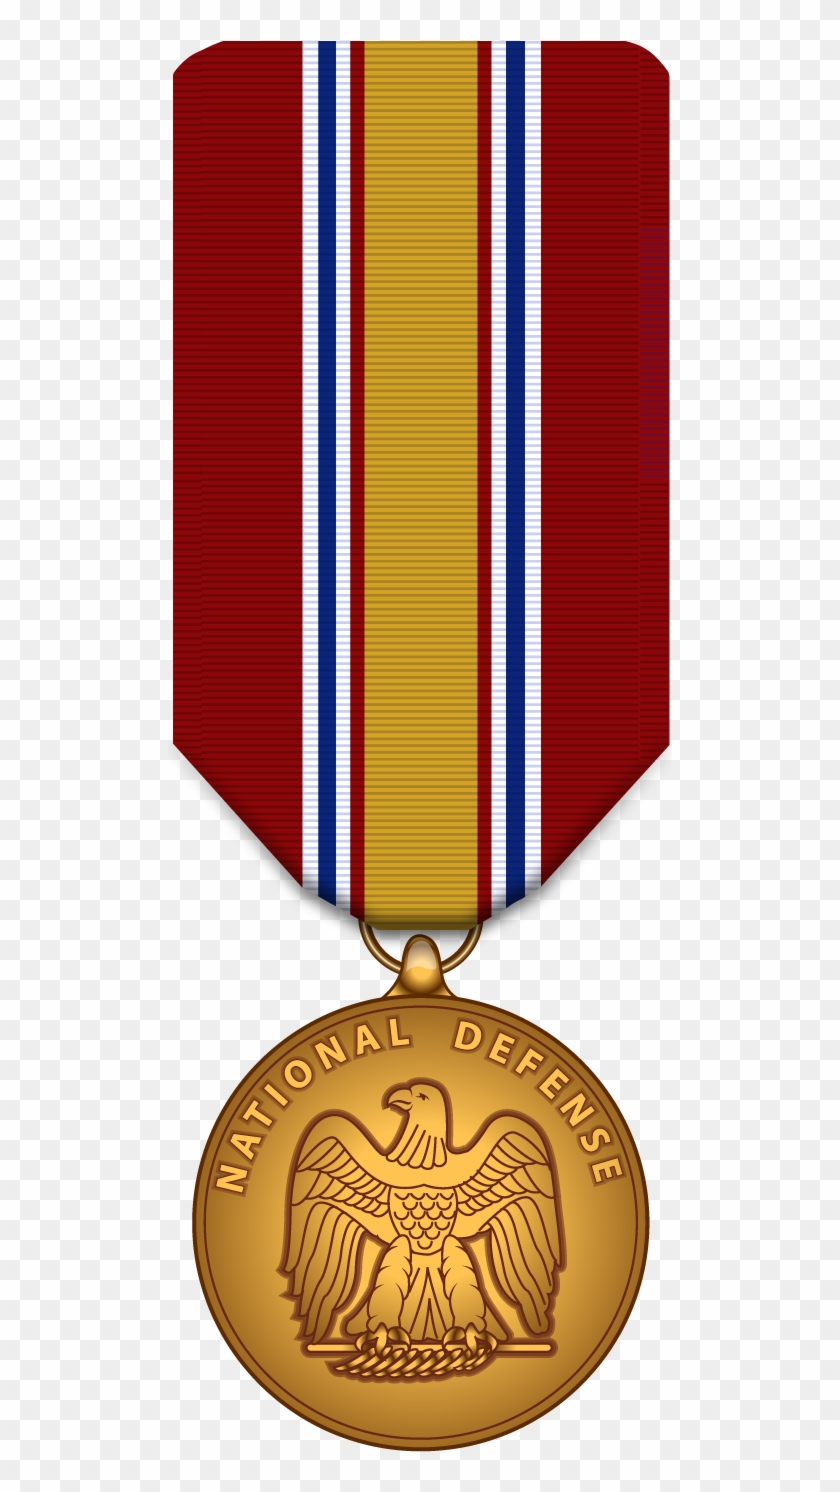 National Defense Service Medal - National Defence Medal Png #705960